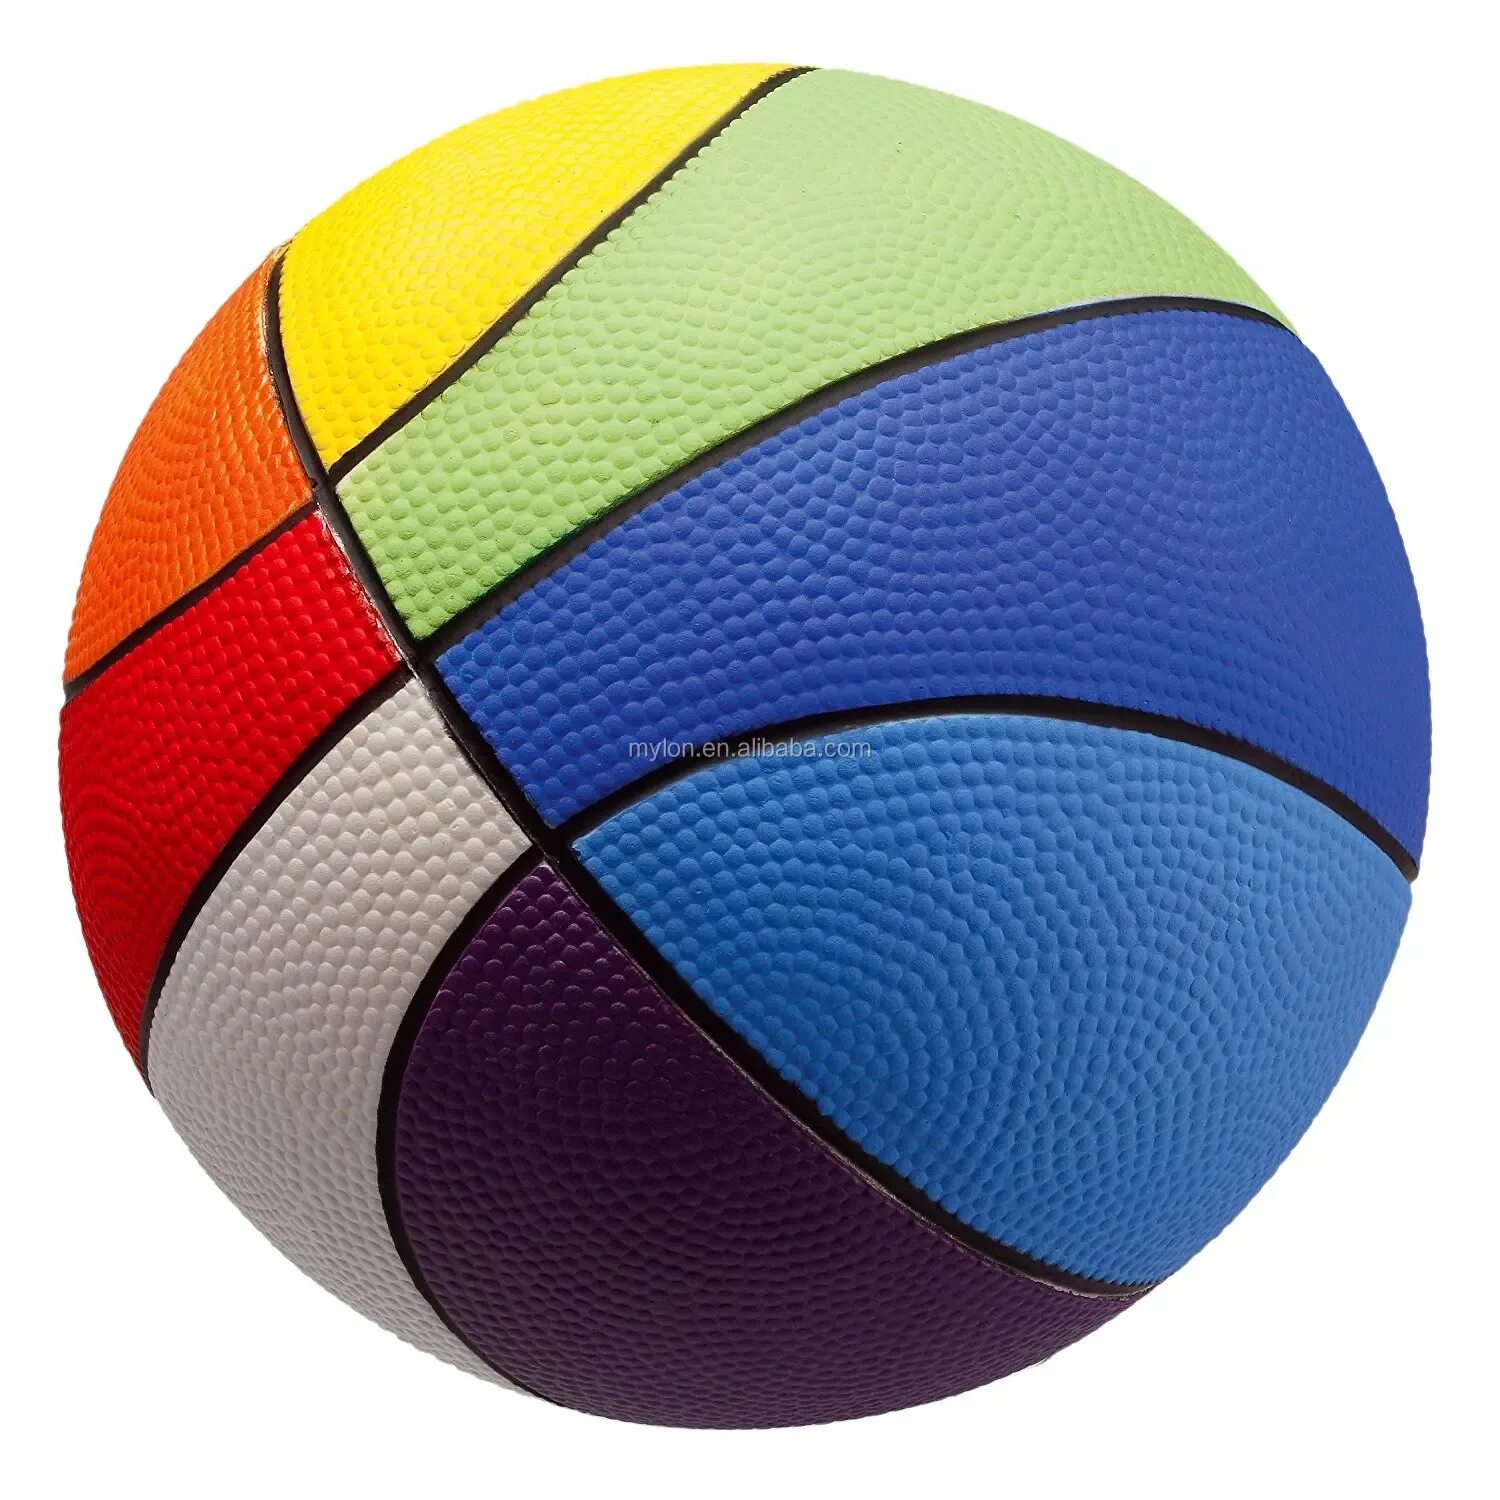 Мяч спортивный маленький. Спортивные мячи. Мяч (спорт). Спортивные мячи для детей. Мячи разные спортивные.